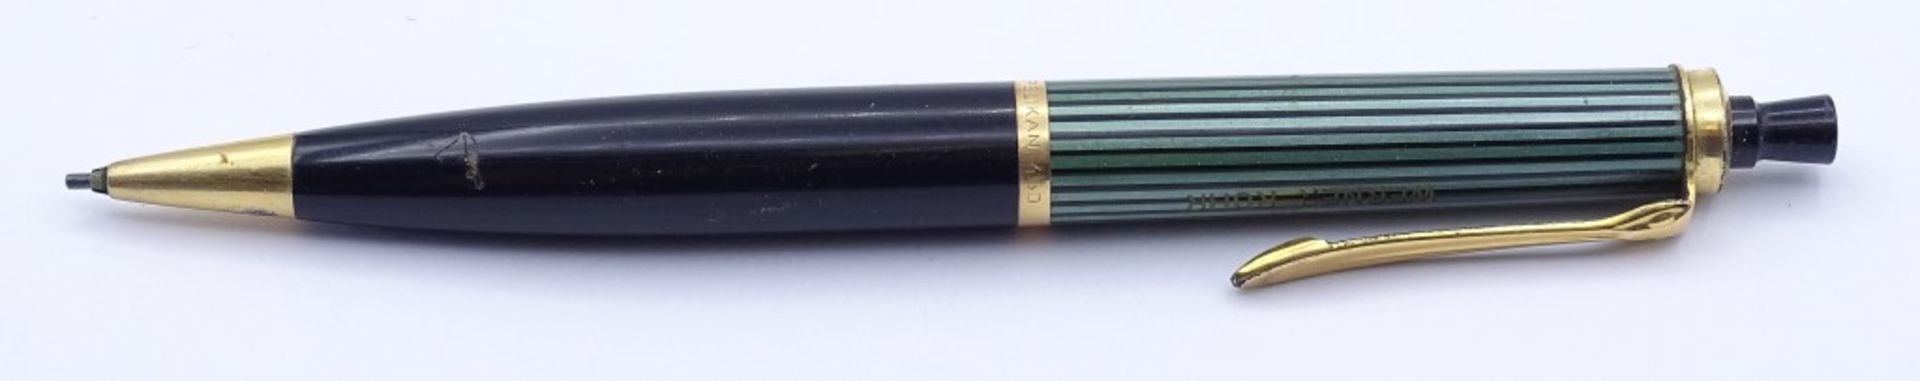 Schreibset "Pelikan" bestehend aus Füller u. Druckbleistift No. 400 & 450.Goldfeder 585/000, - Bild 5 aus 8